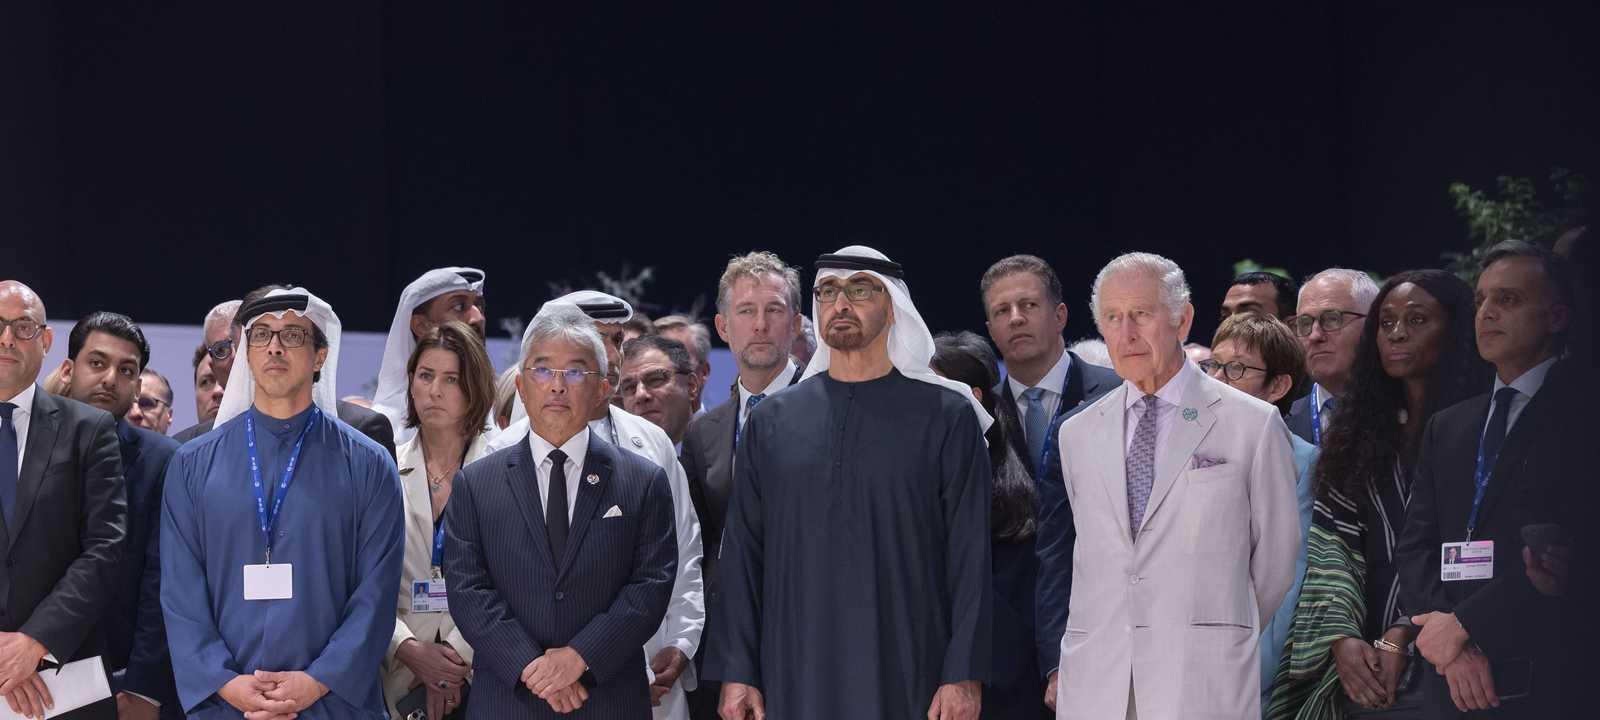 الشيخ محمد بن زايد آل نهيان رئيس دولة الإمارات -مؤتمر كوب28